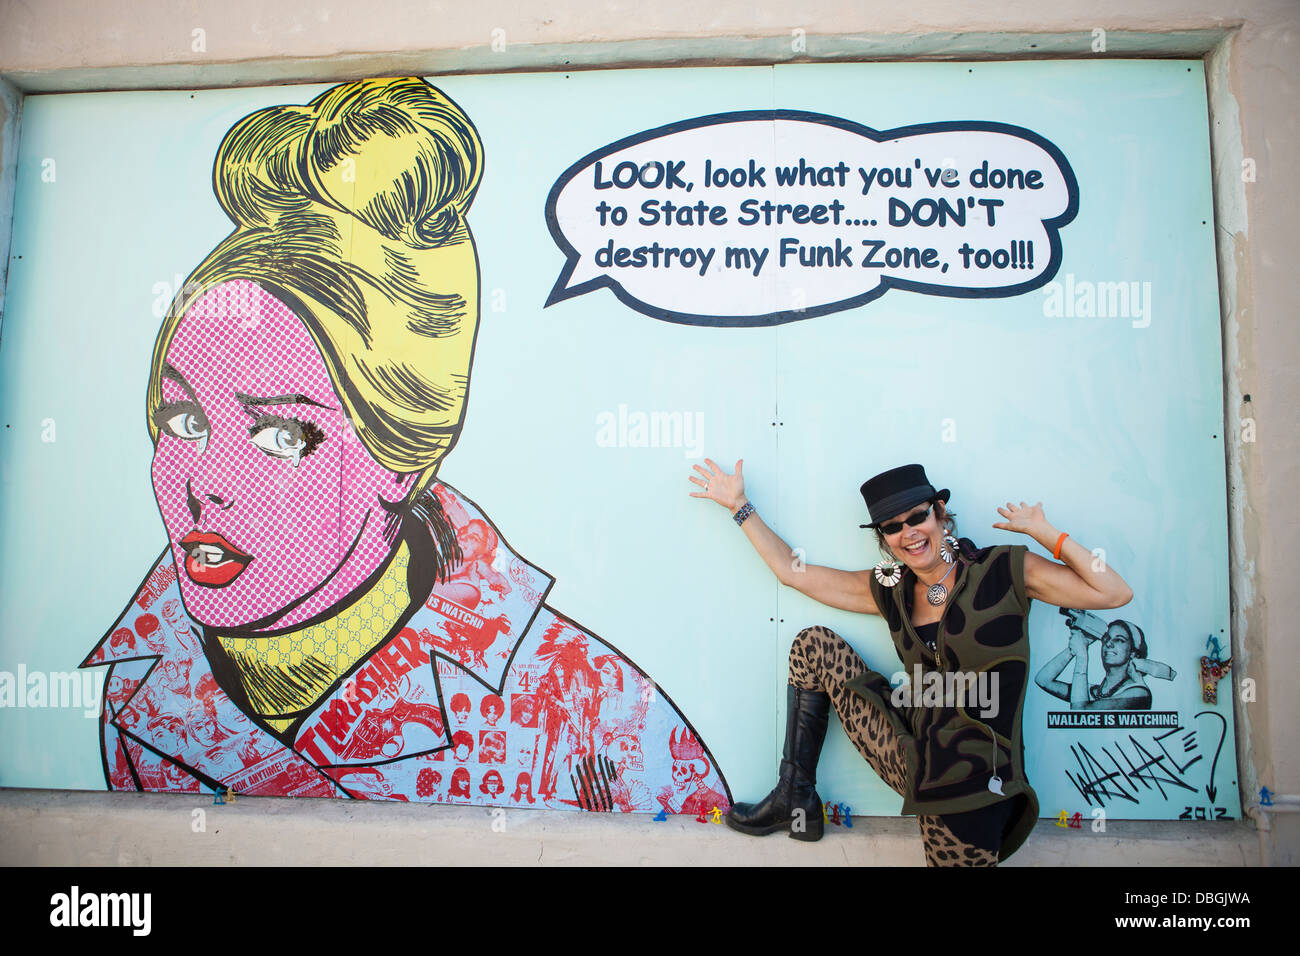 Laura tintas y obra por el artista Wallace, artistas haciendo una escena callejera mural, la zona de Funk, en Santa Bárbara, California Foto de stock